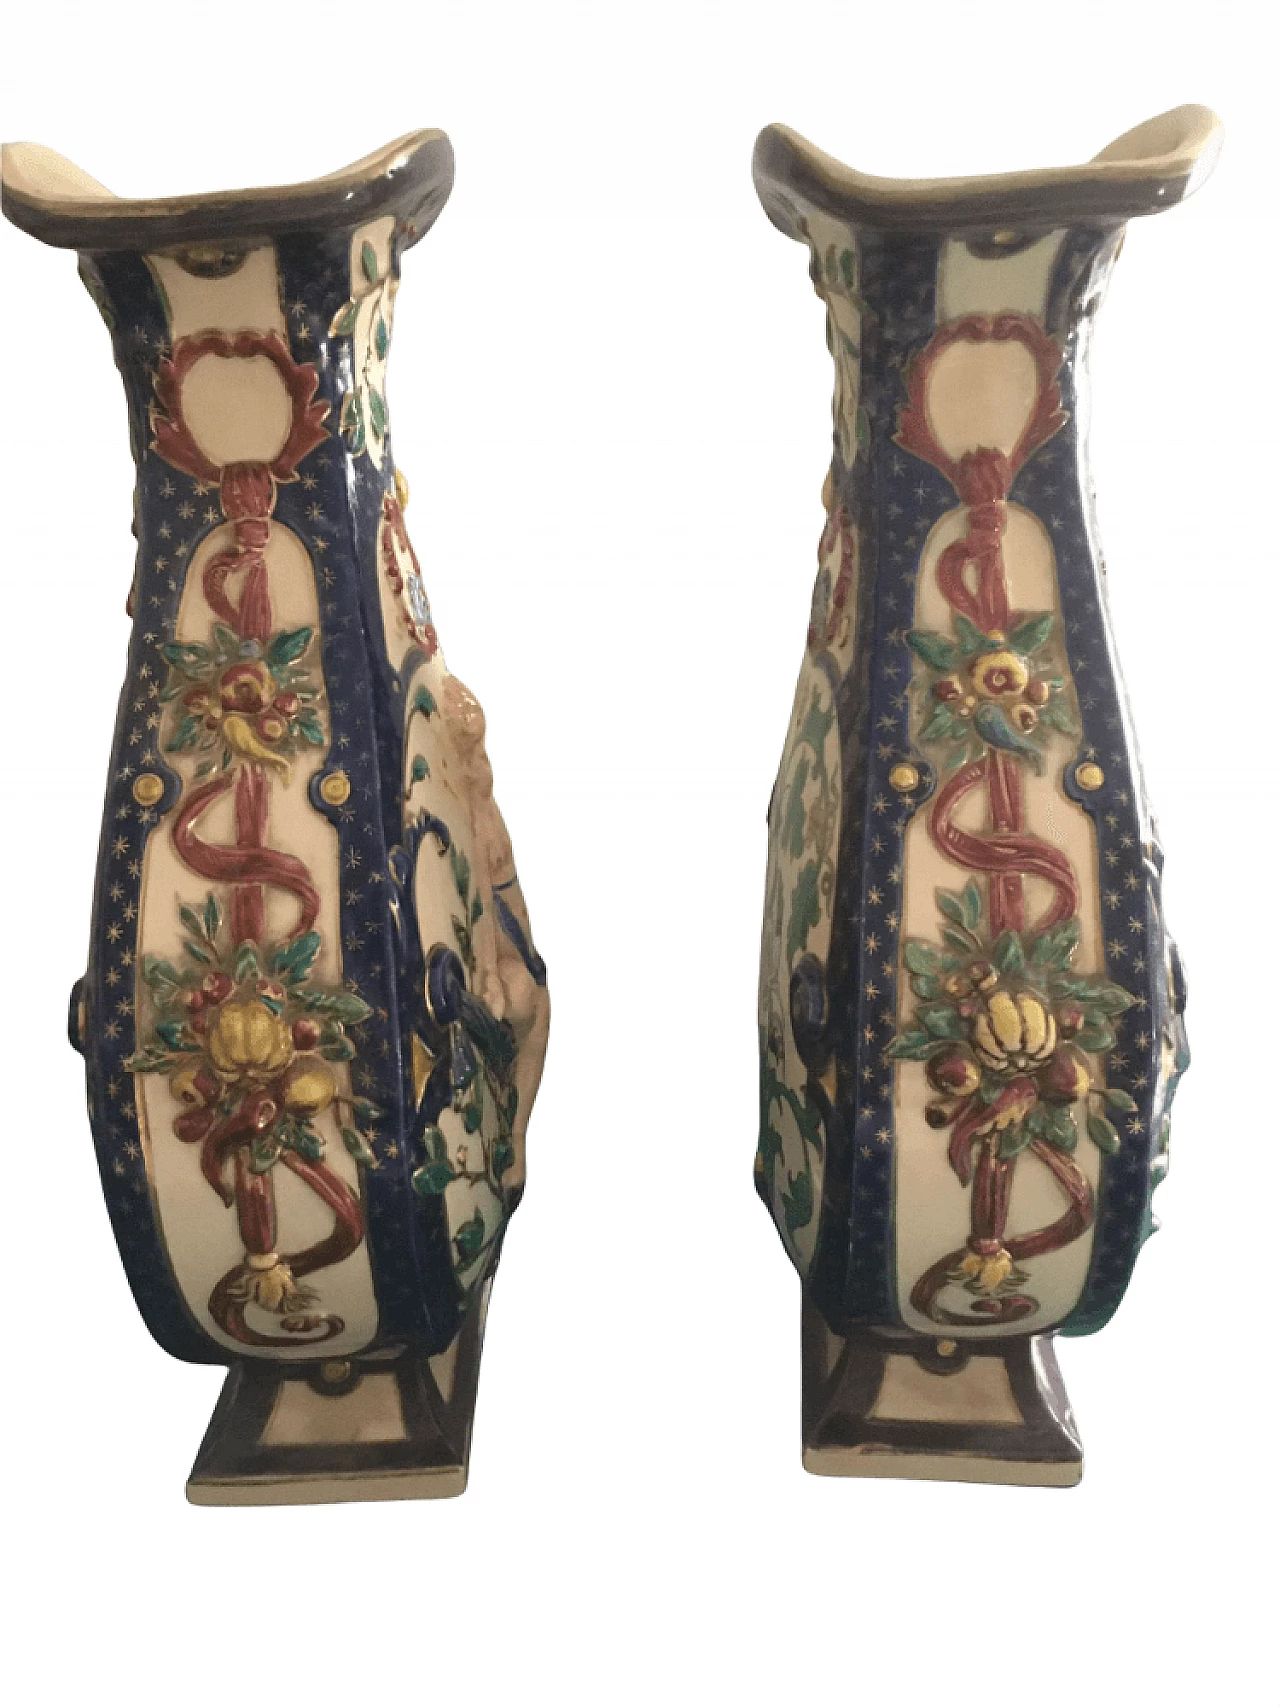 Pair of Schütz Brothers ceramic vases, 19th century 1362407